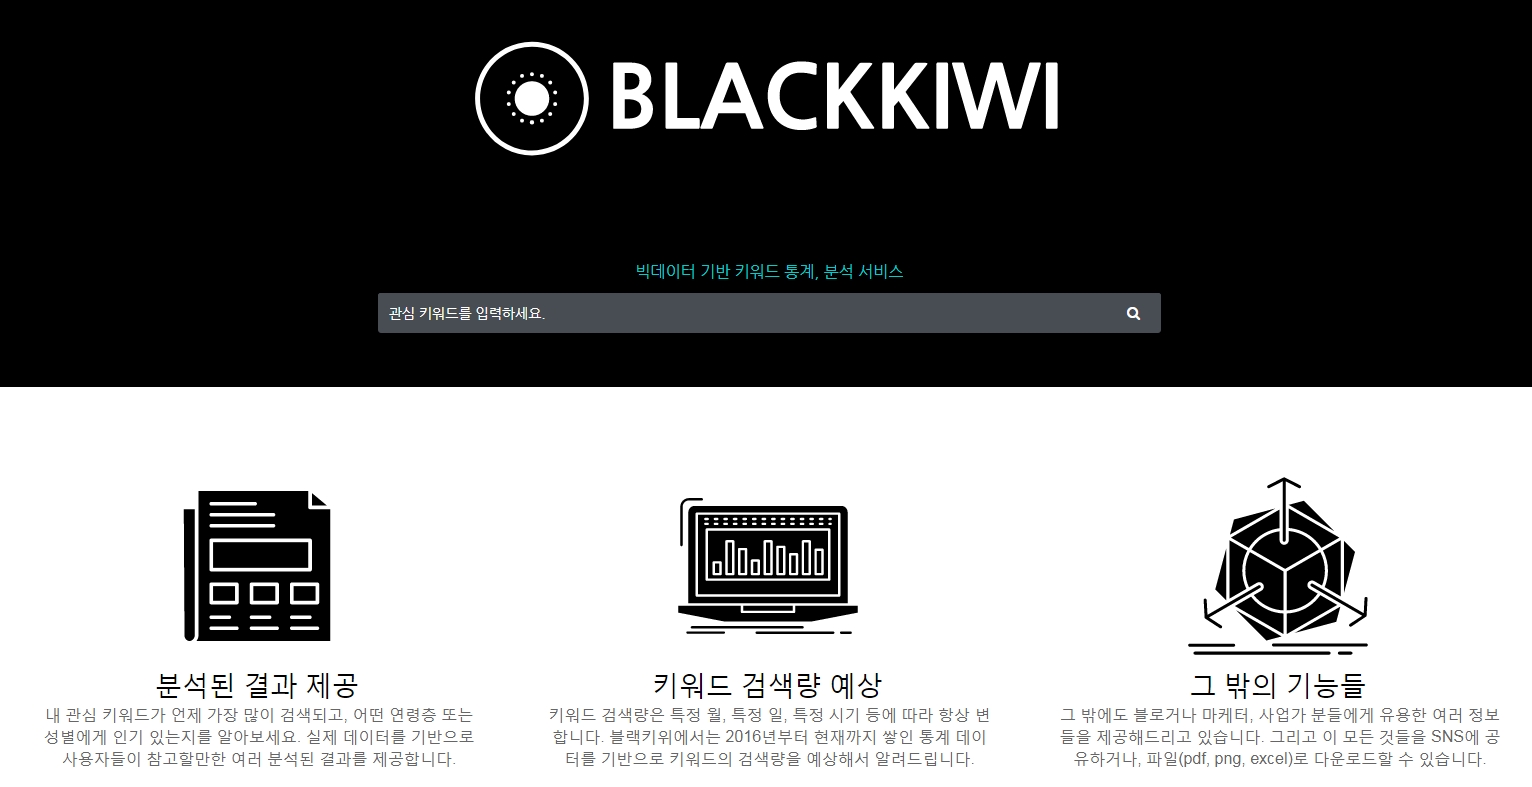 키워드 검색 사이트 추천 - 블랙키위(Blackkiwi)